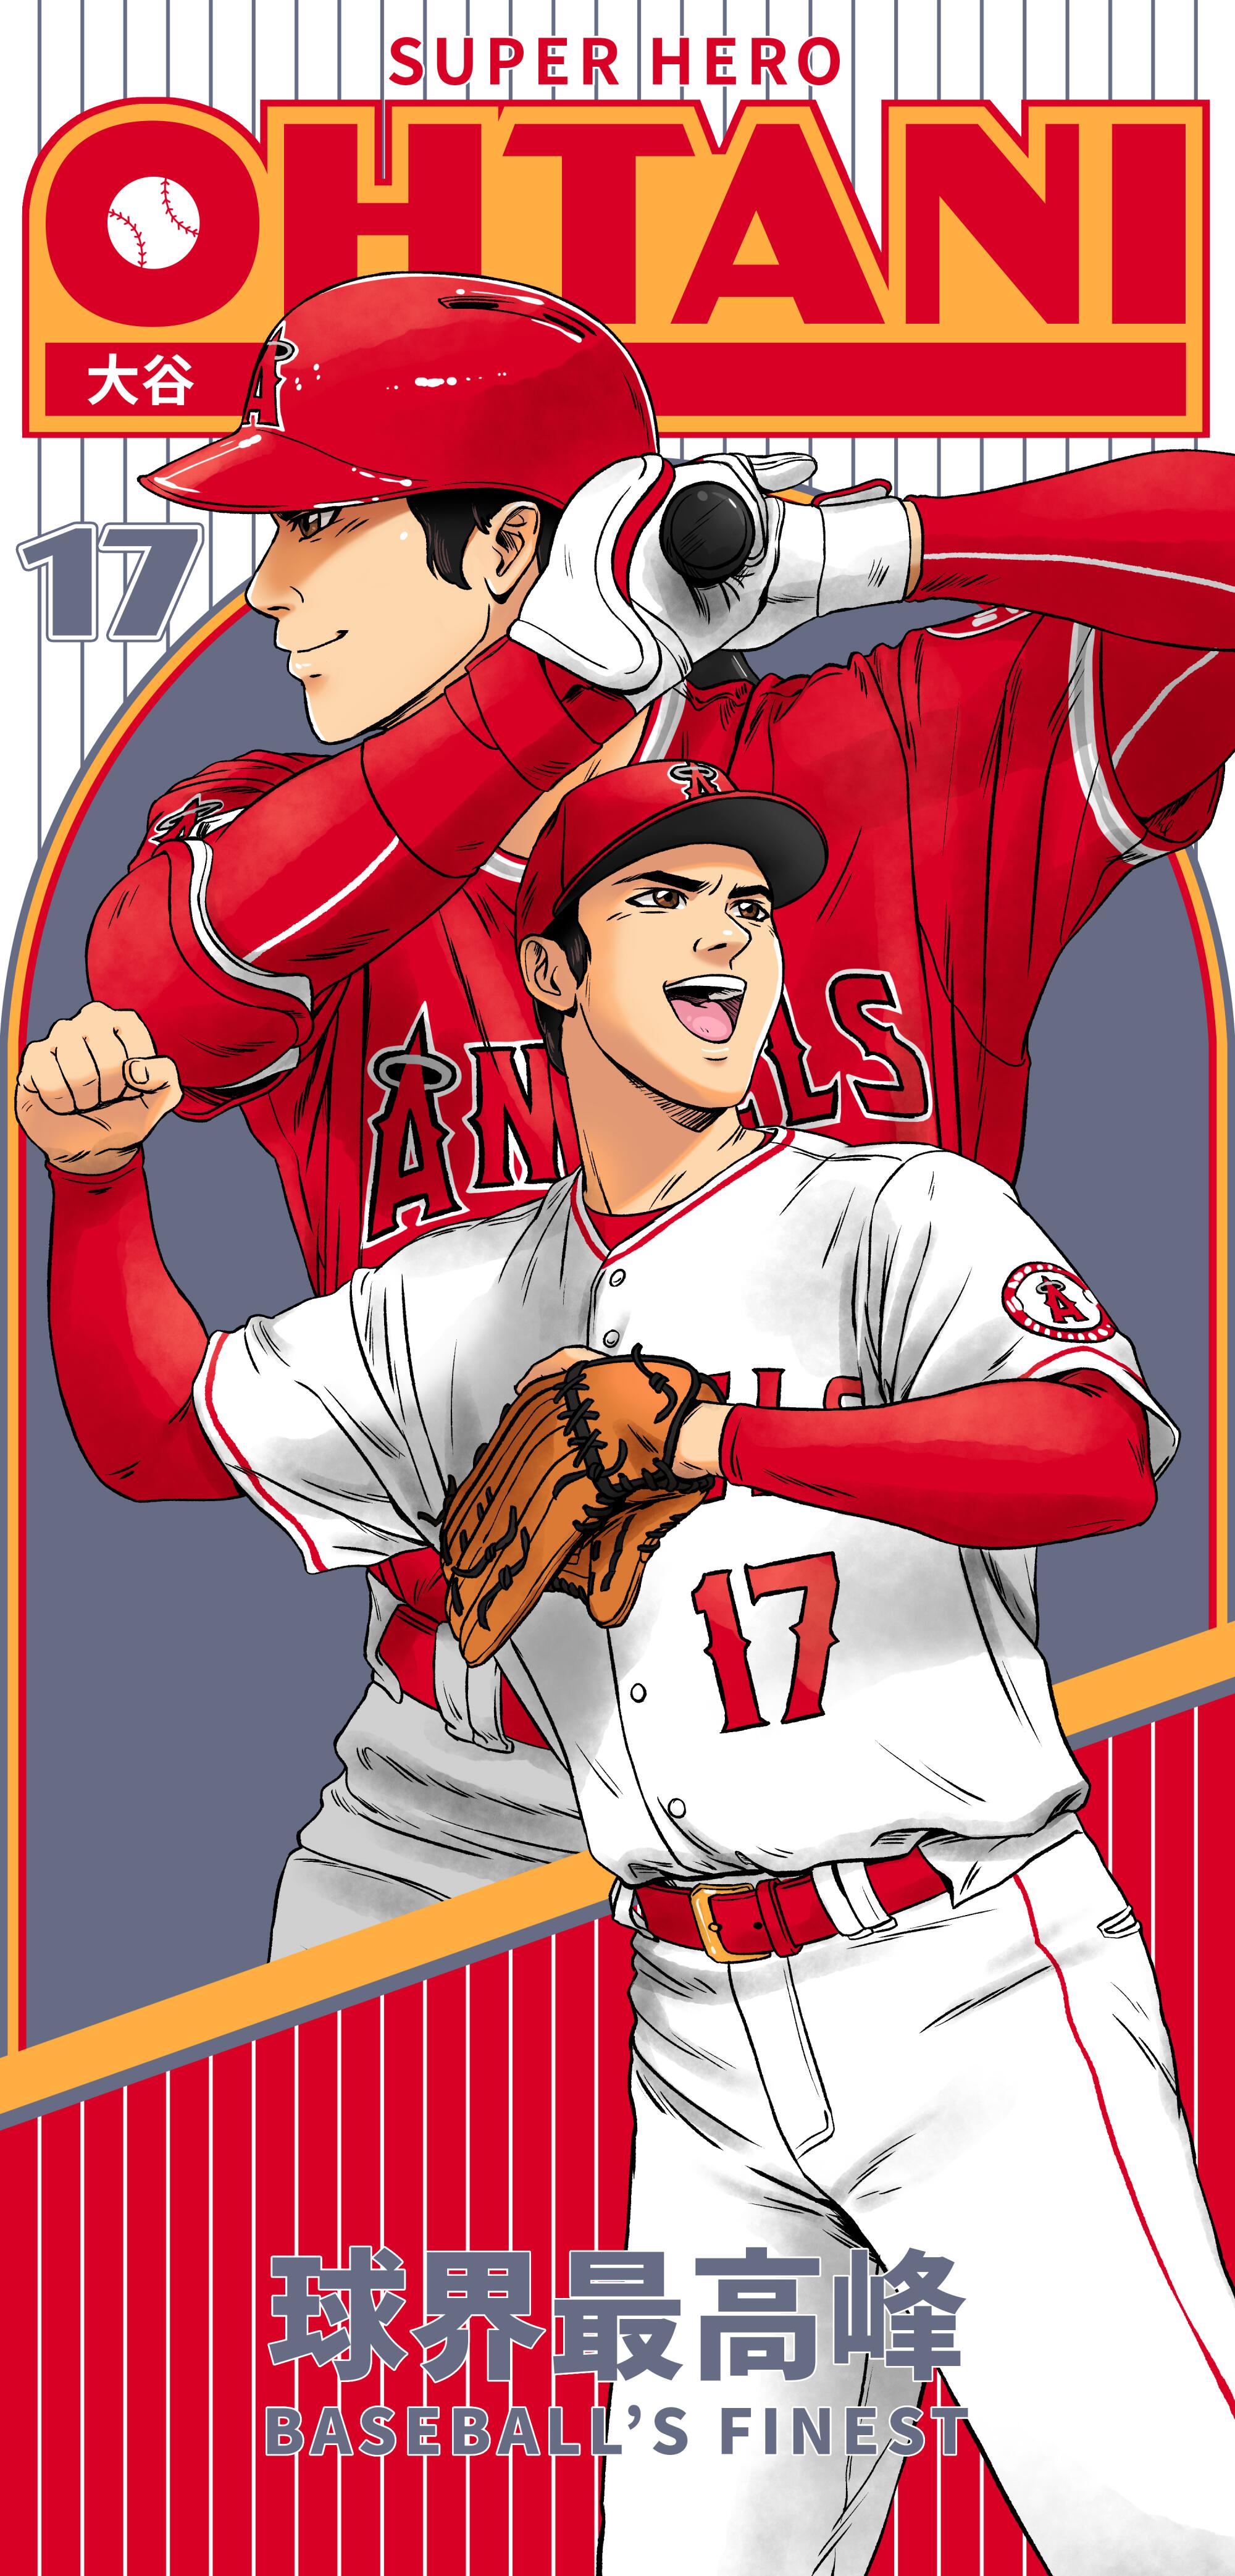 Illustration de style manga de Shohei Ohtani frappant et applaudissant.  En haut, le texte dit "Super héros";  en bas "Le meilleur du baseball"